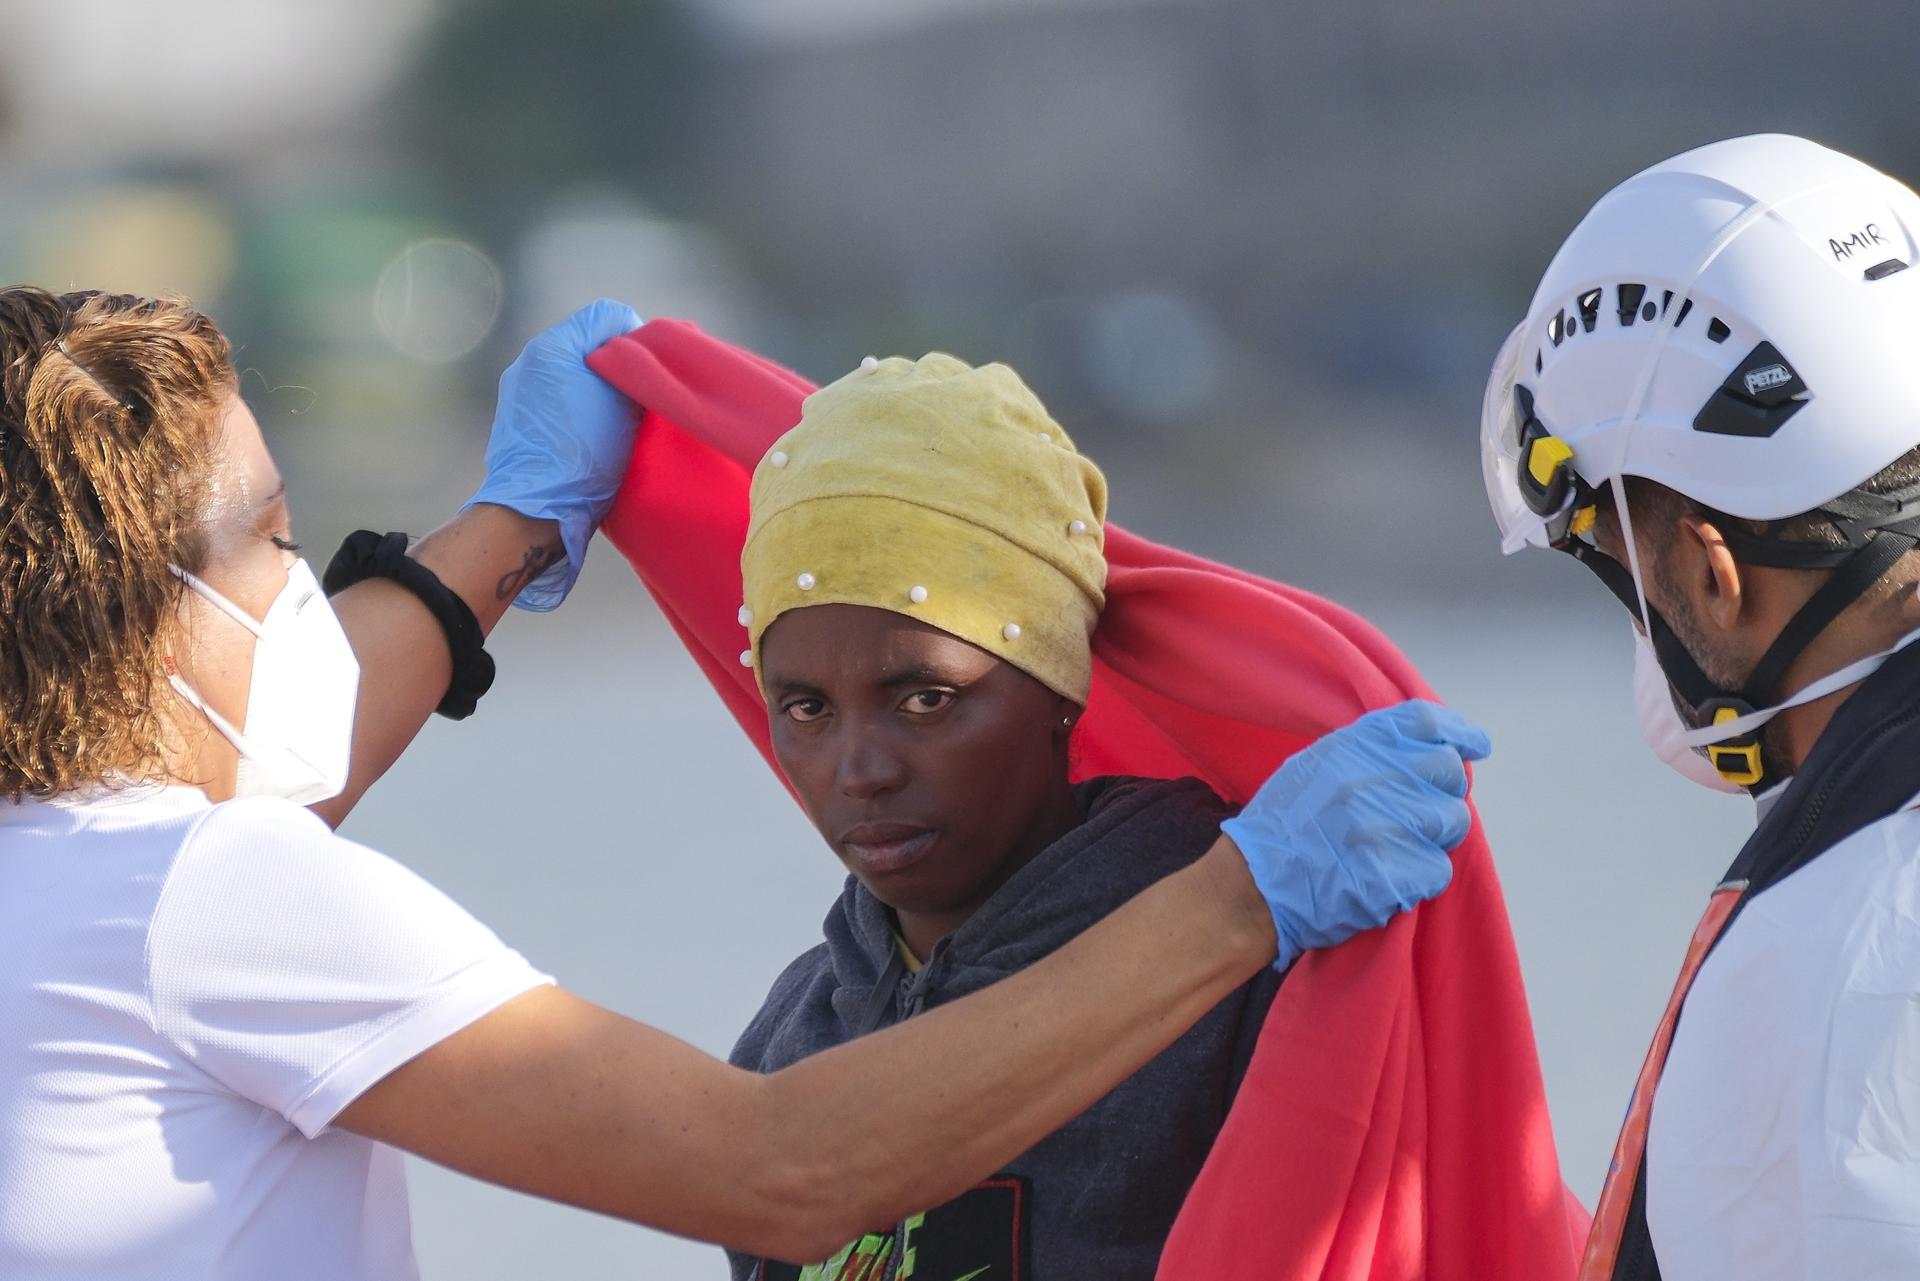 La embarcación Salvamar Macondo, de Salvamento Marítimo, ha socorrido este miércoles a un cayuco con 78 ocupantes, entre ellos una mujer, localizado 11,5 kilómetros al sur de Gran Canaria EFE/Ángel Medina G.